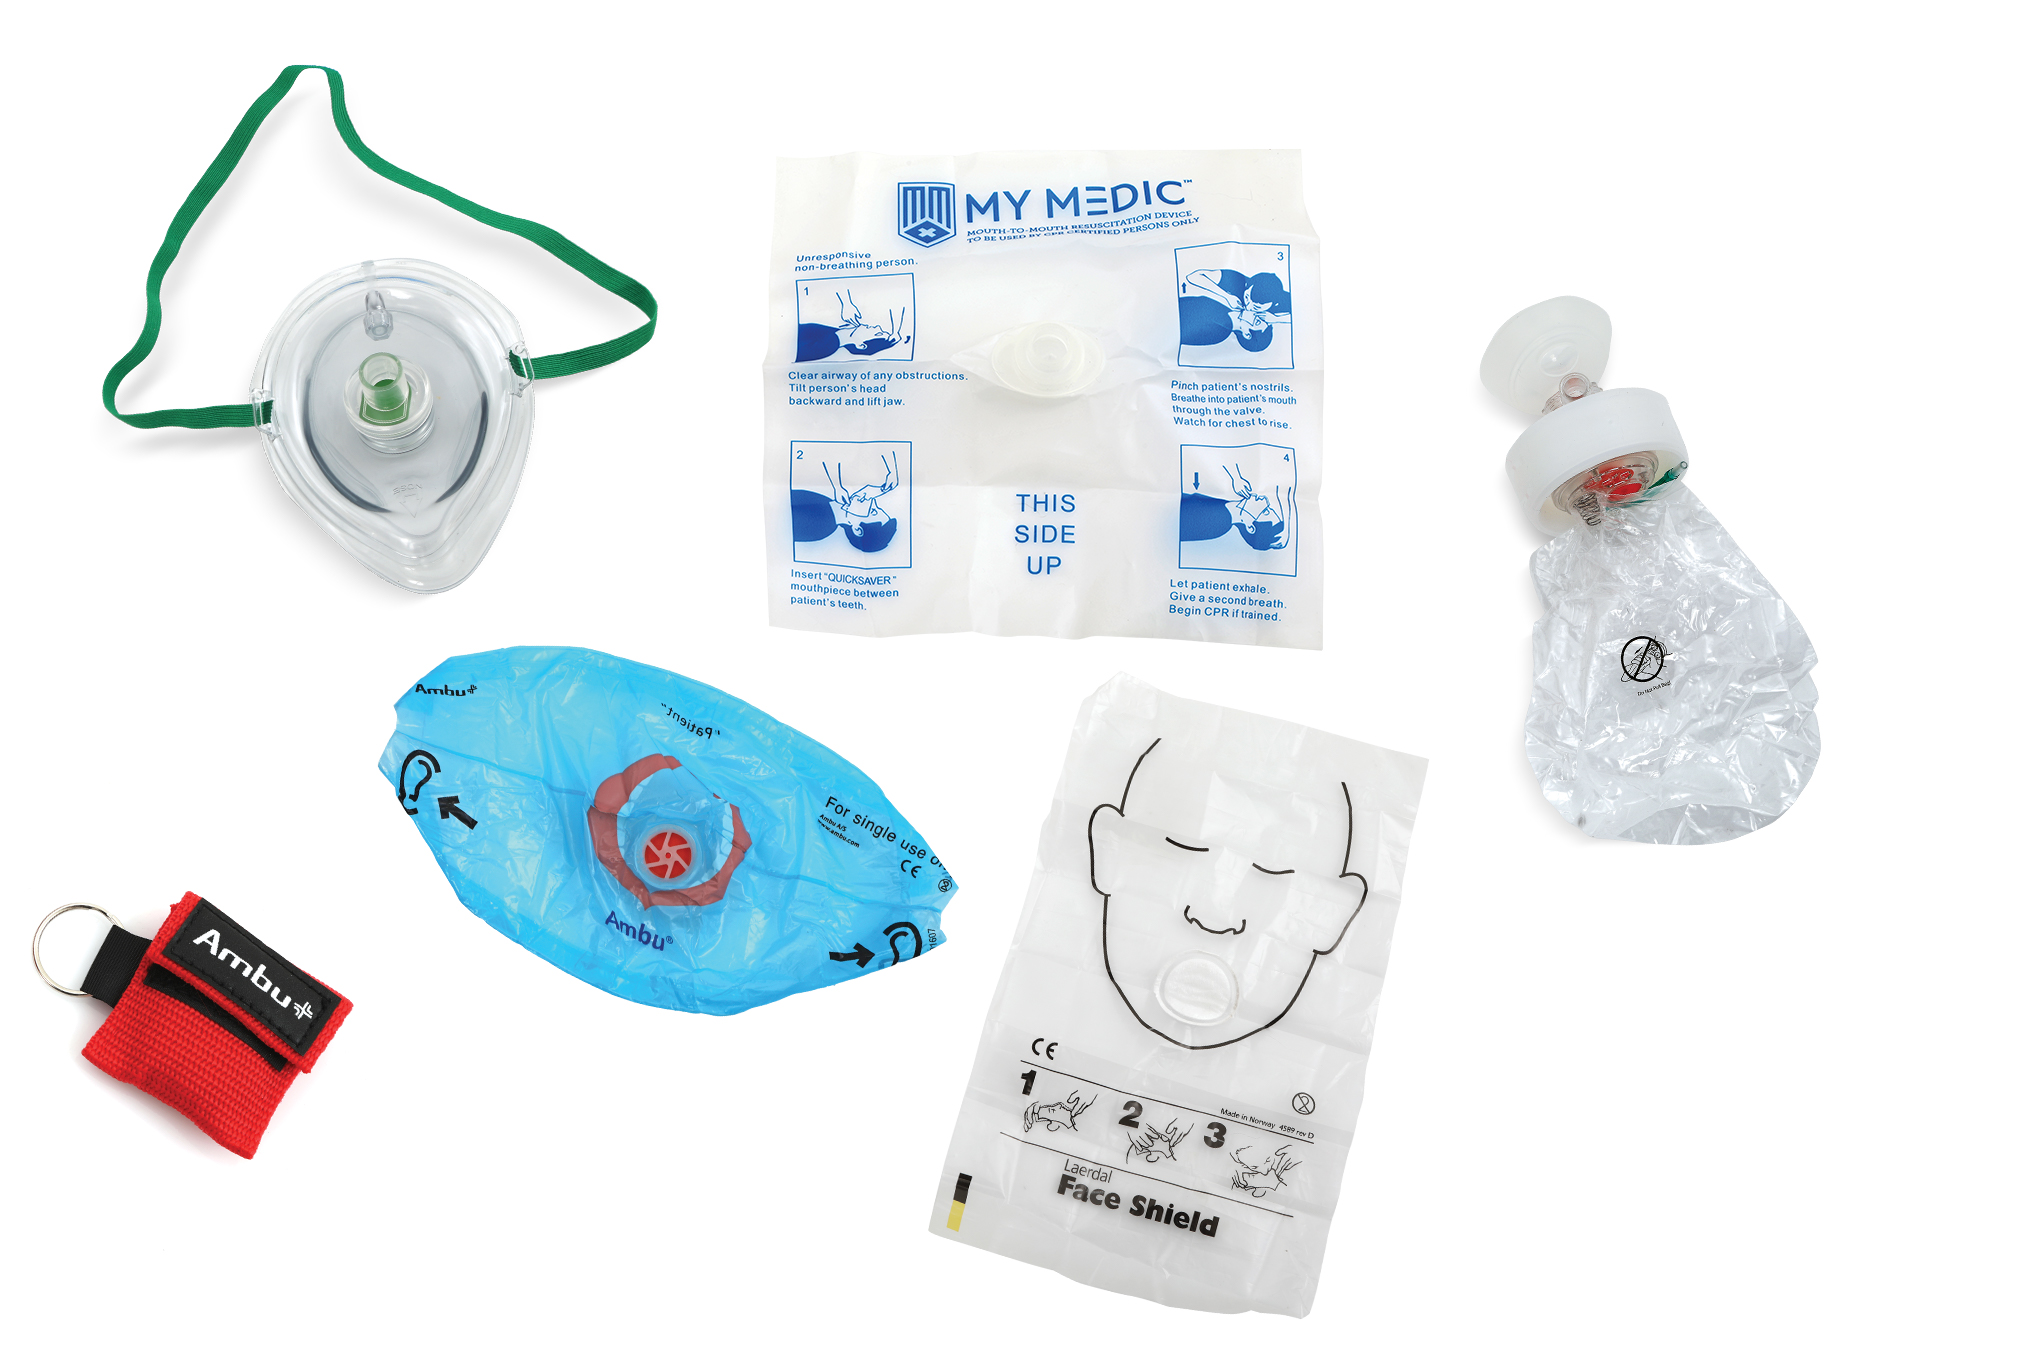 Storm CPR Pocket Mask 